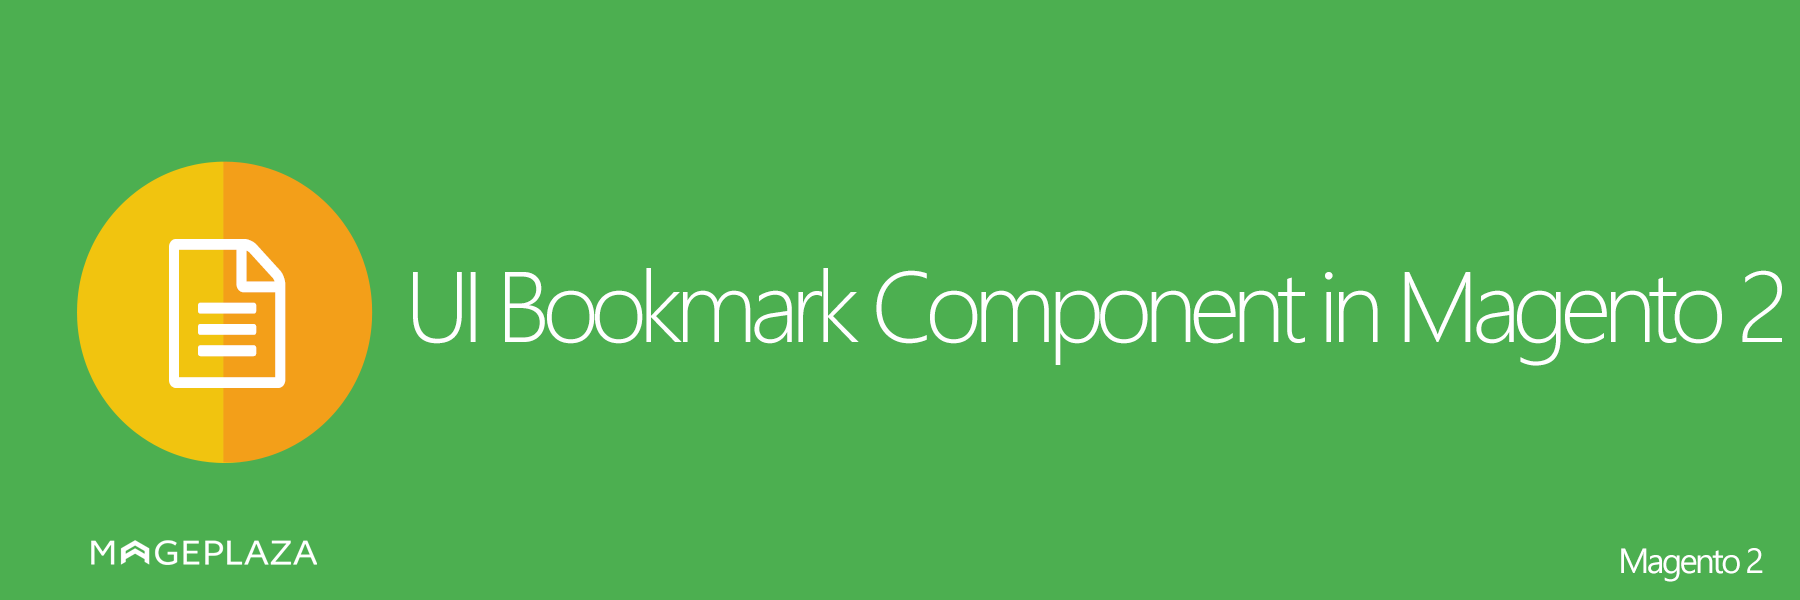 UI Bookmark Component